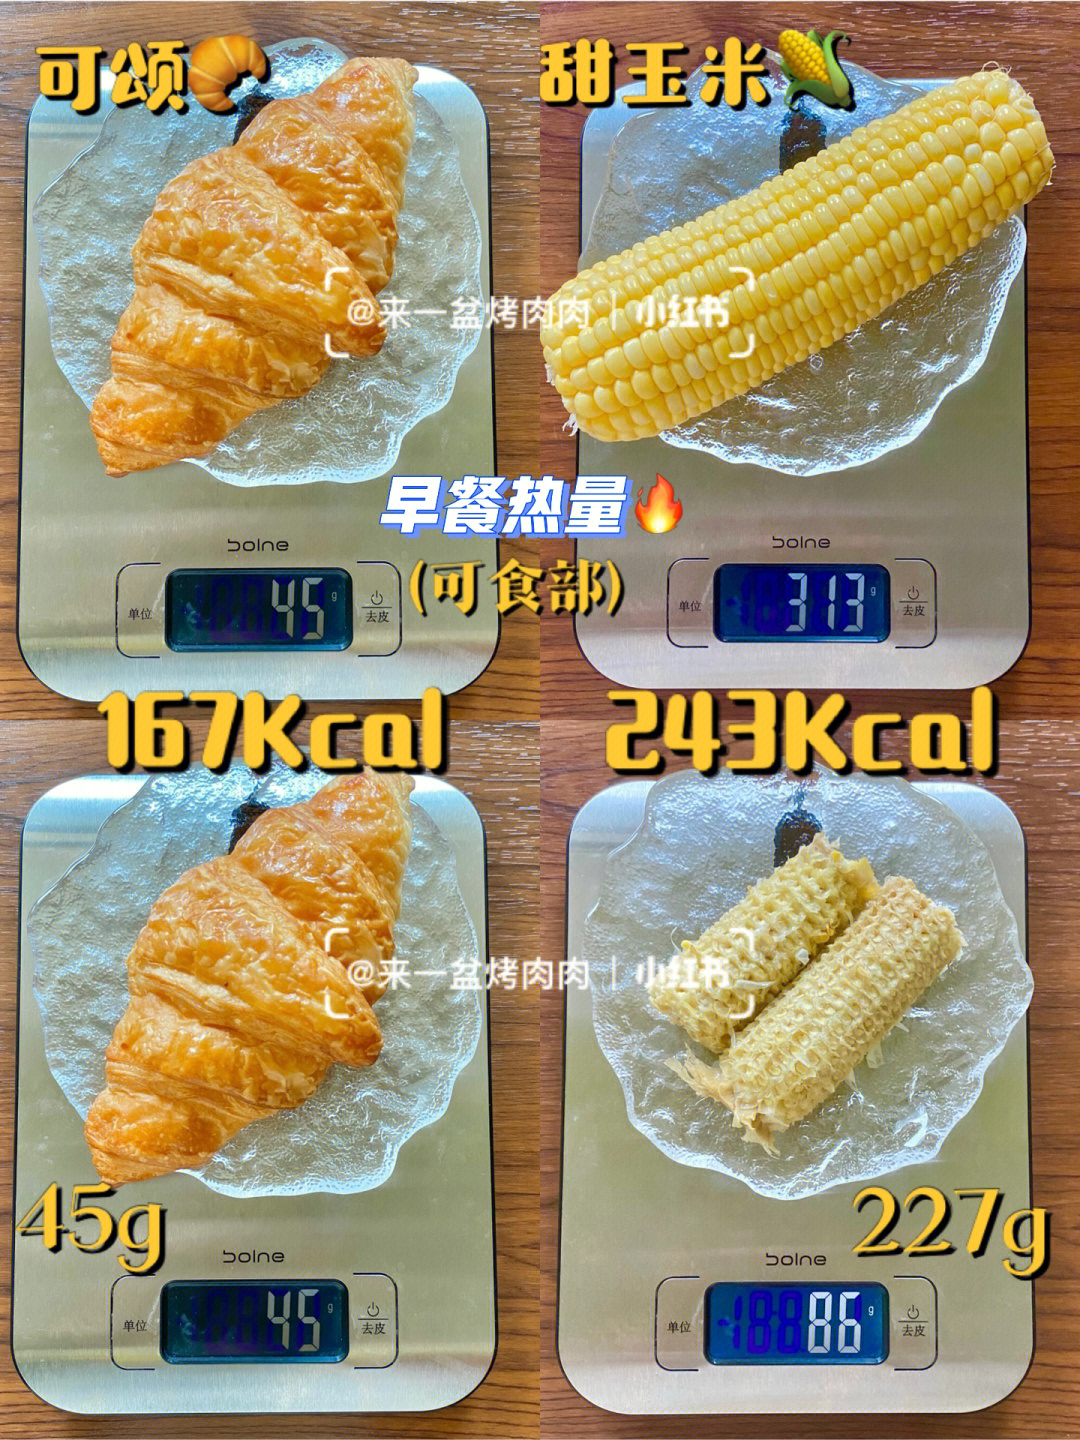 热量测评早餐热量可颂04甜玉米